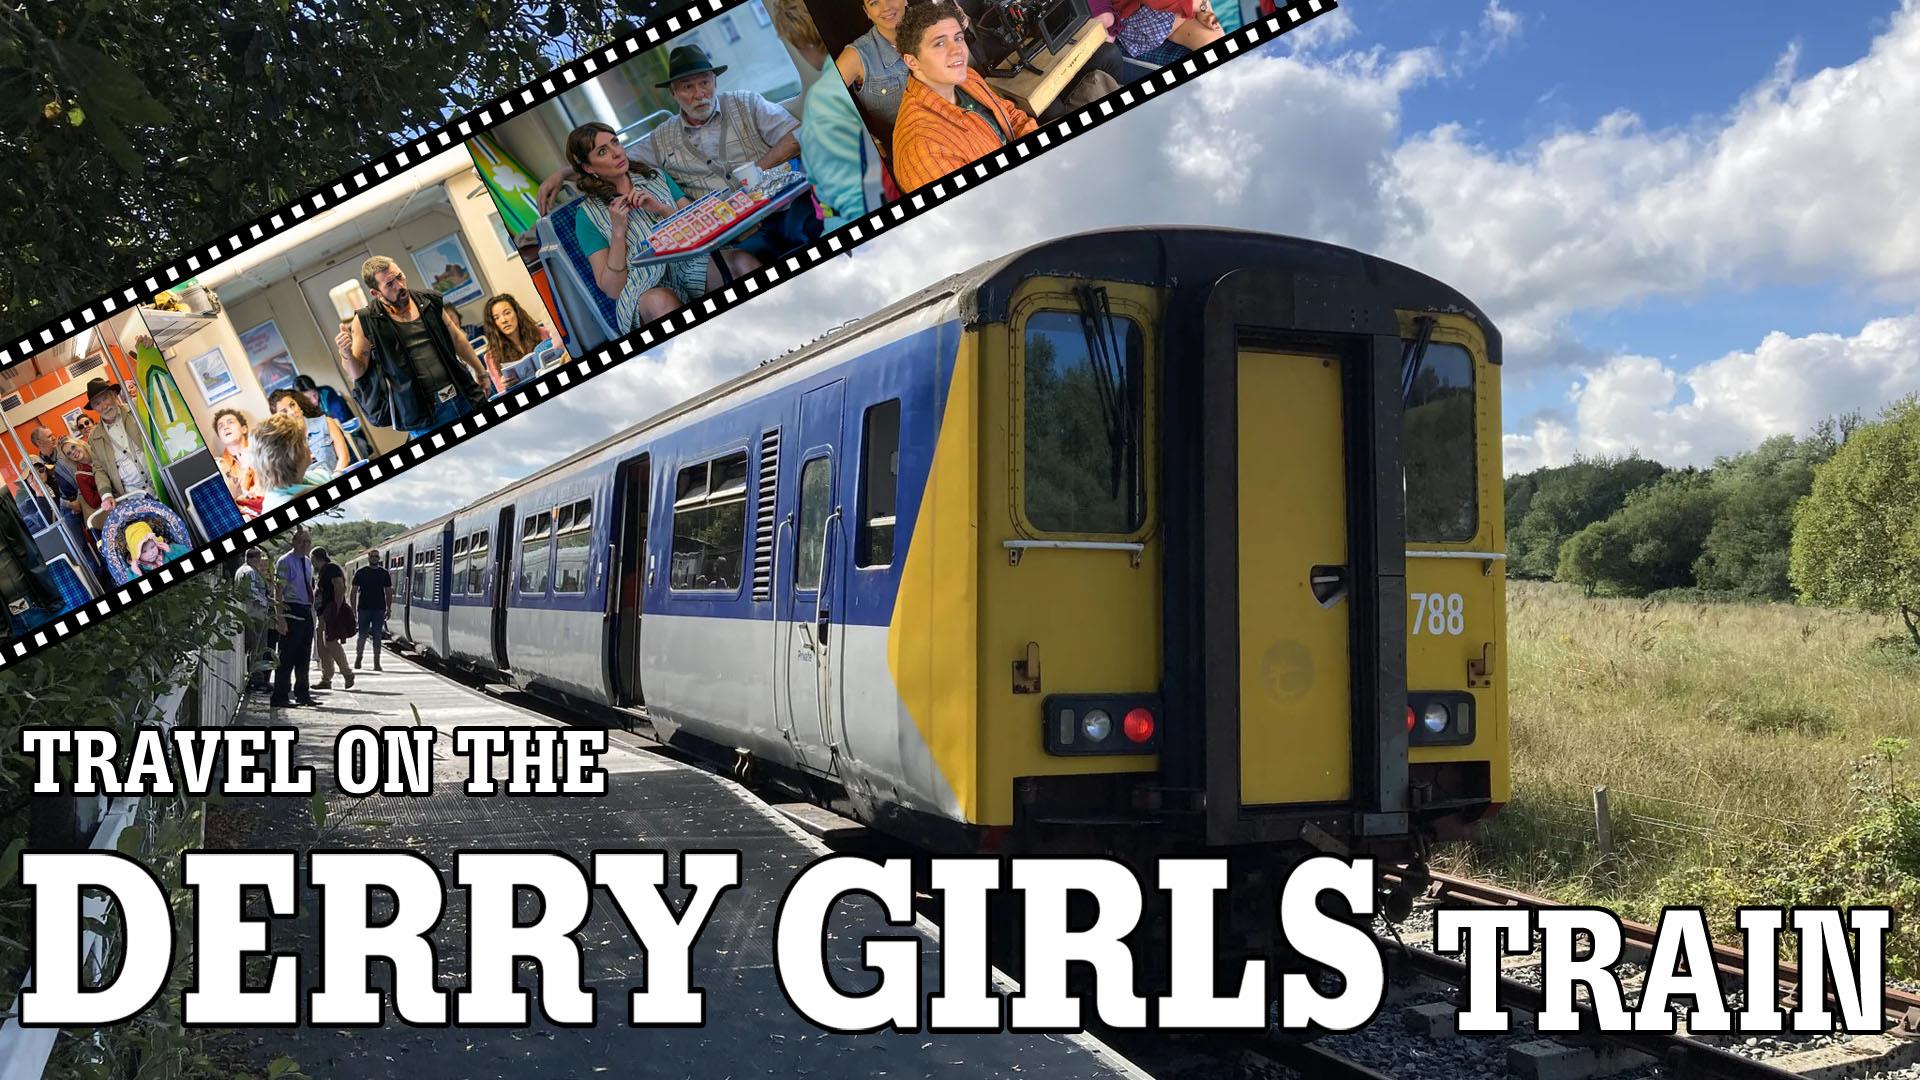 Derry Girls Train